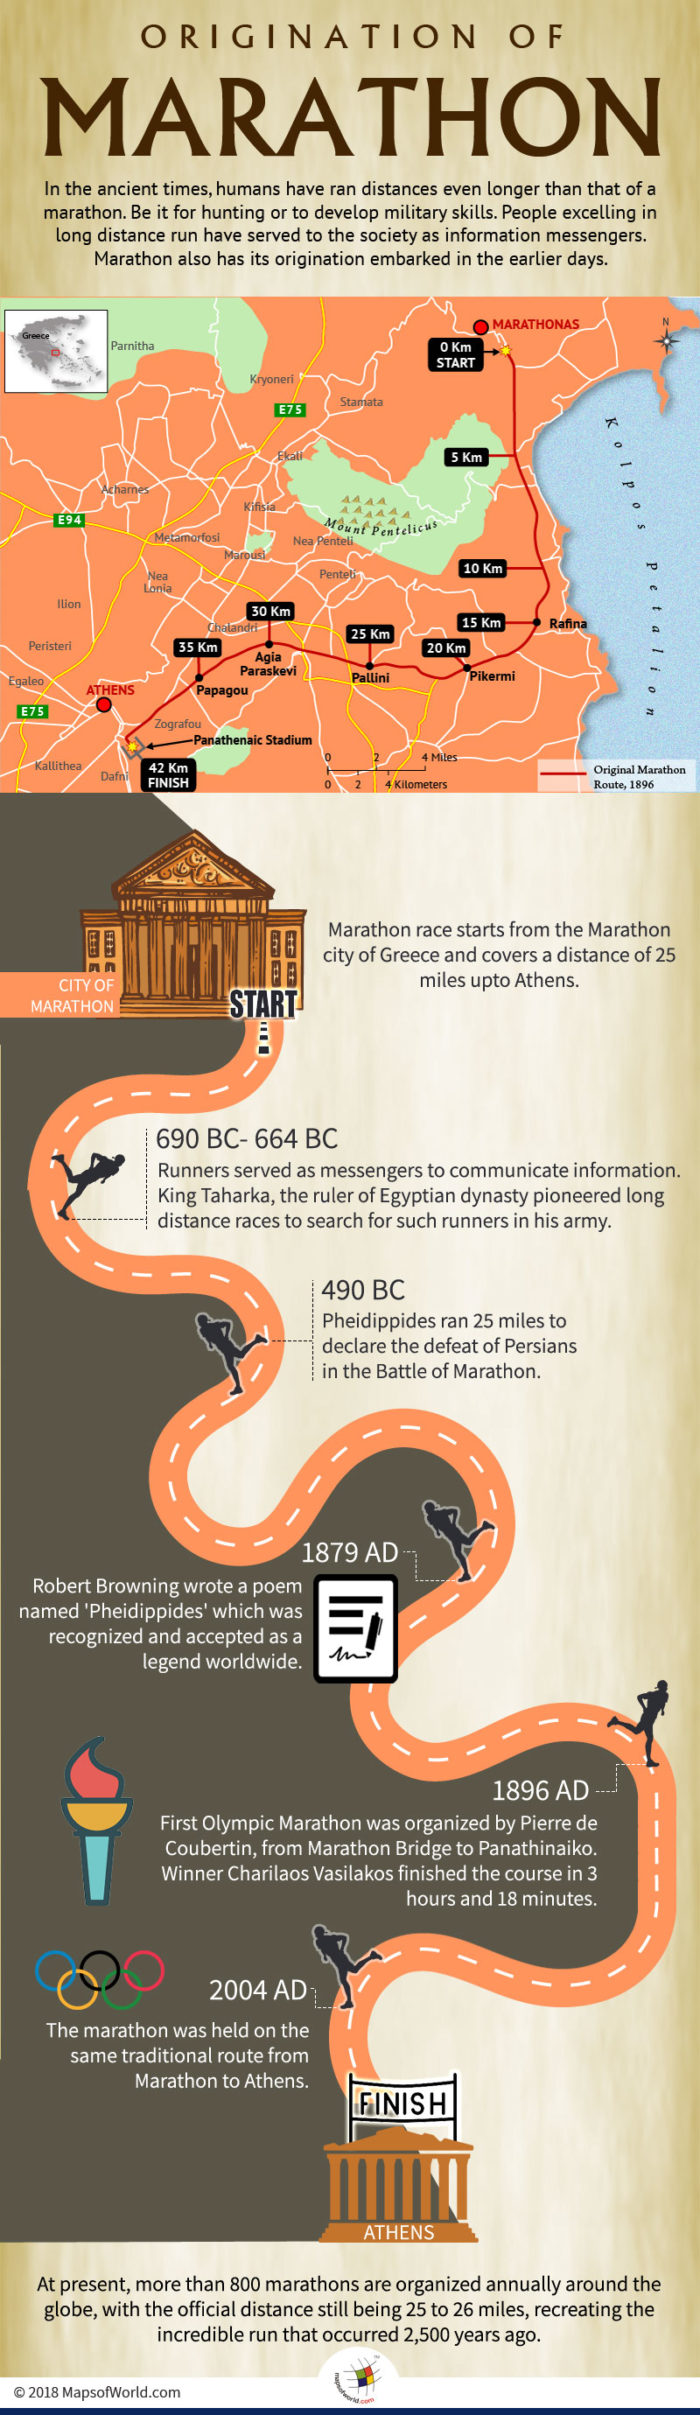 Infographic elaborating origination of Marathon